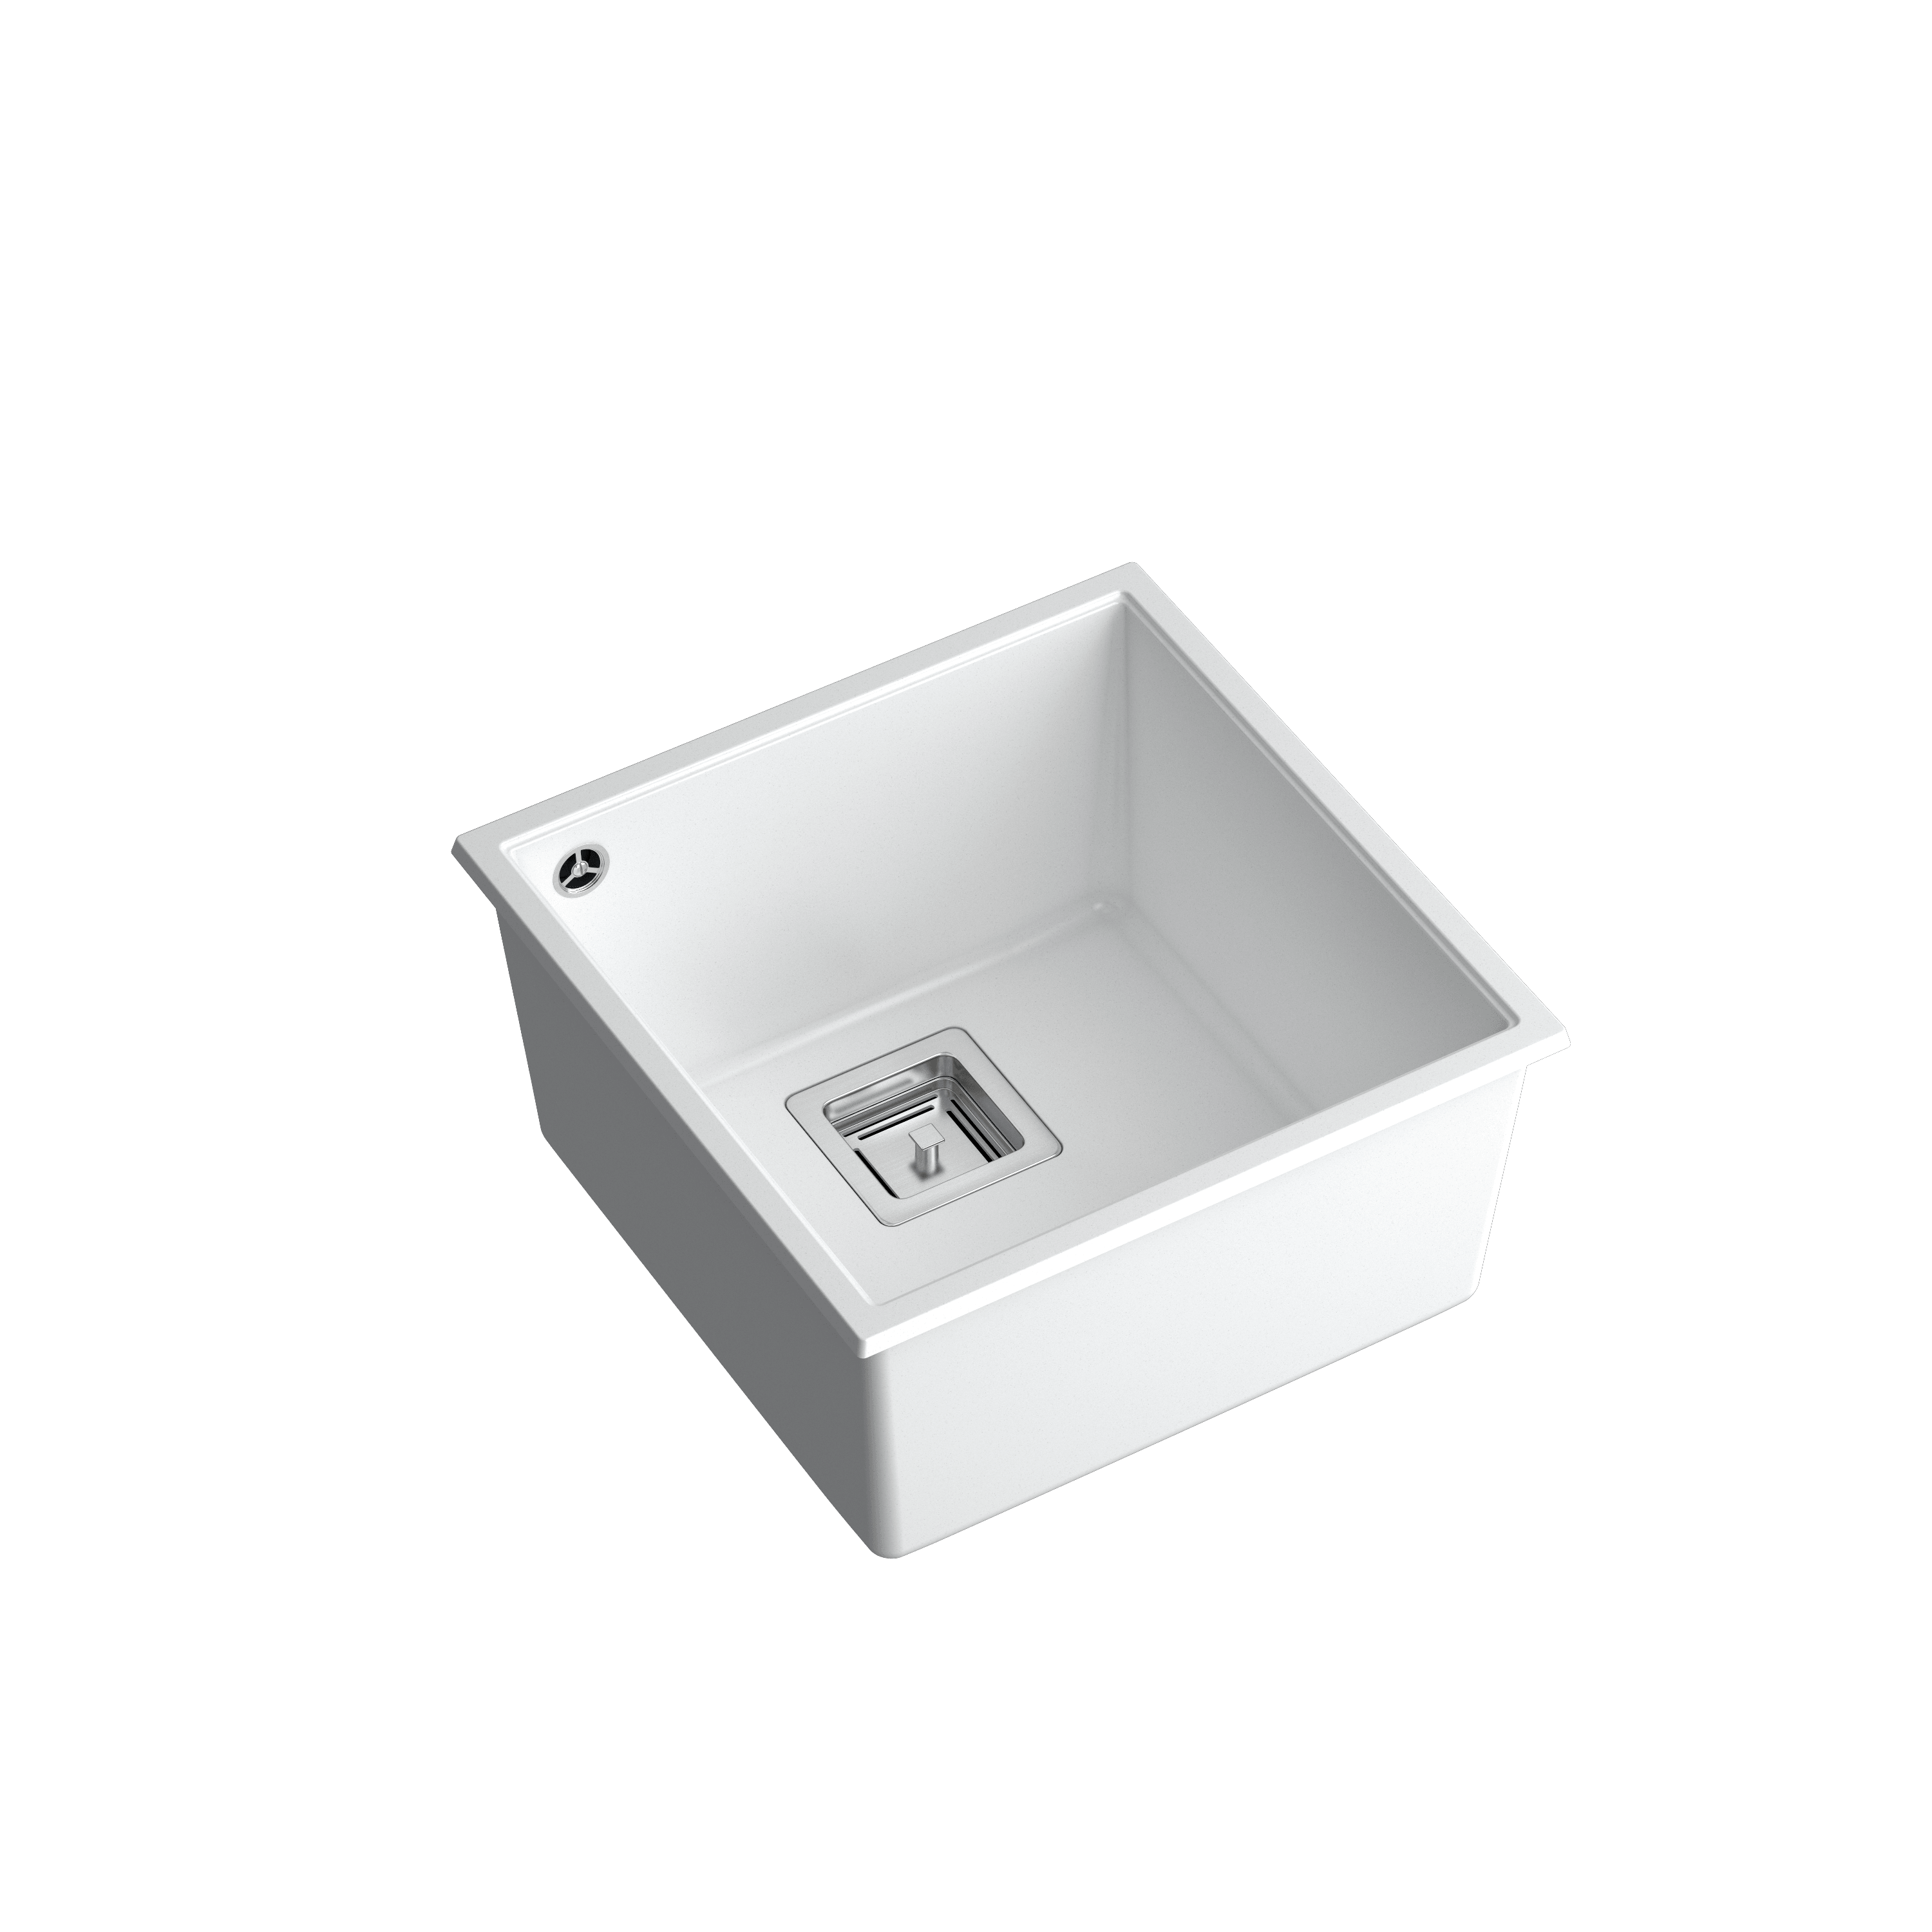 Quadron David 40 White, topmount or undermount sink - Olif